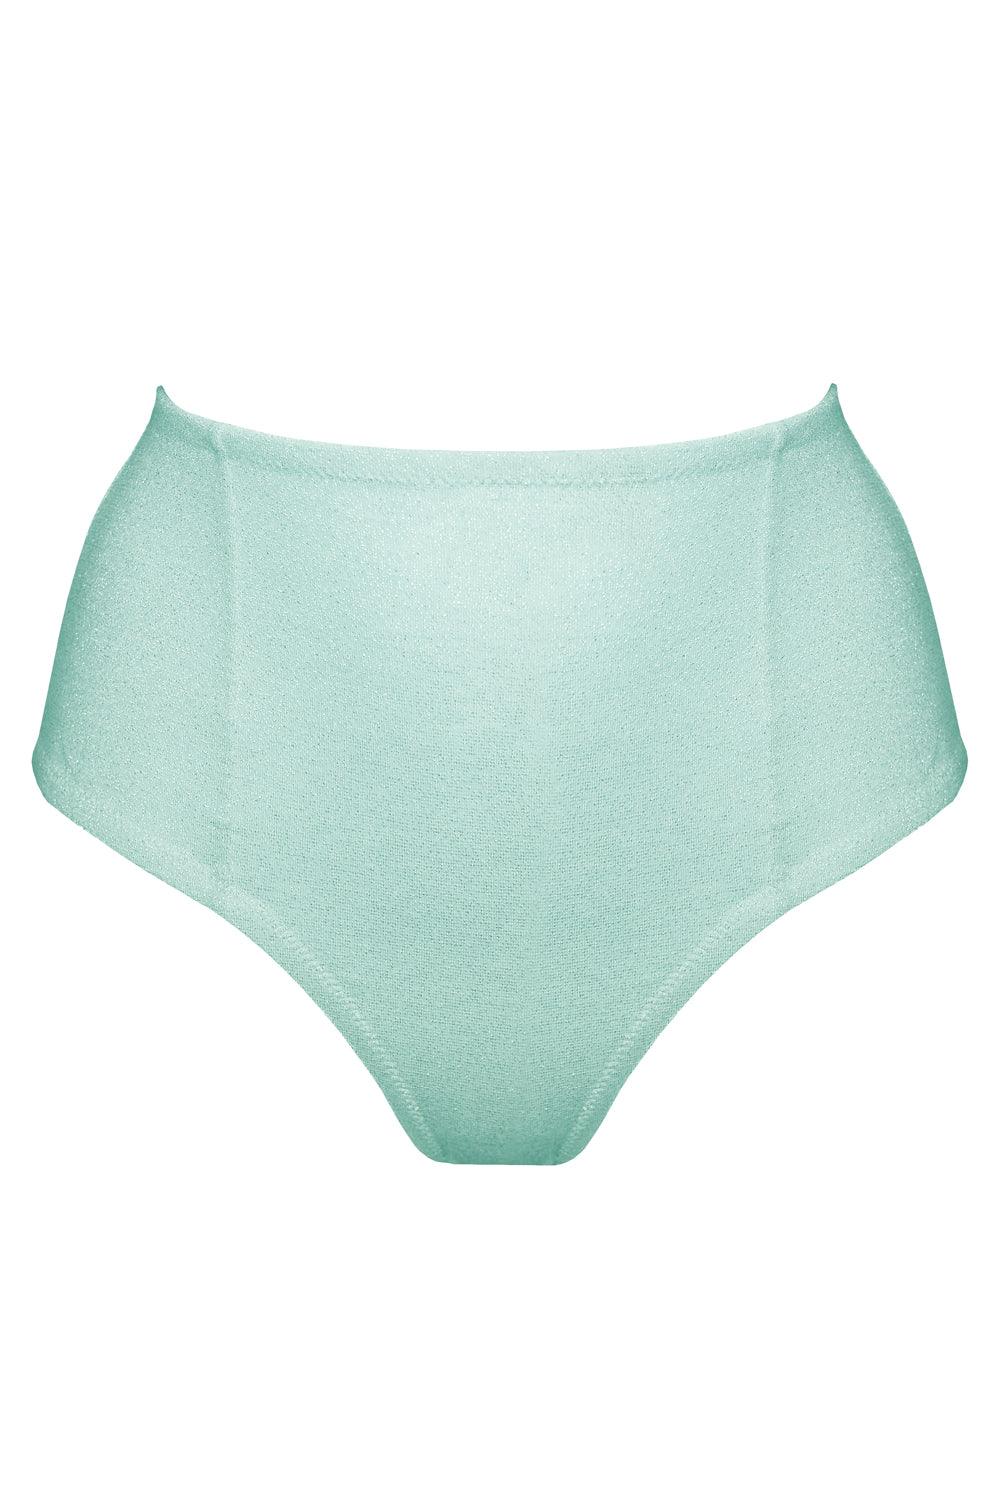 Ariel Mint high waisted bikini bottom - Bikini bottom by Love Jilty. Shop on yesUndress